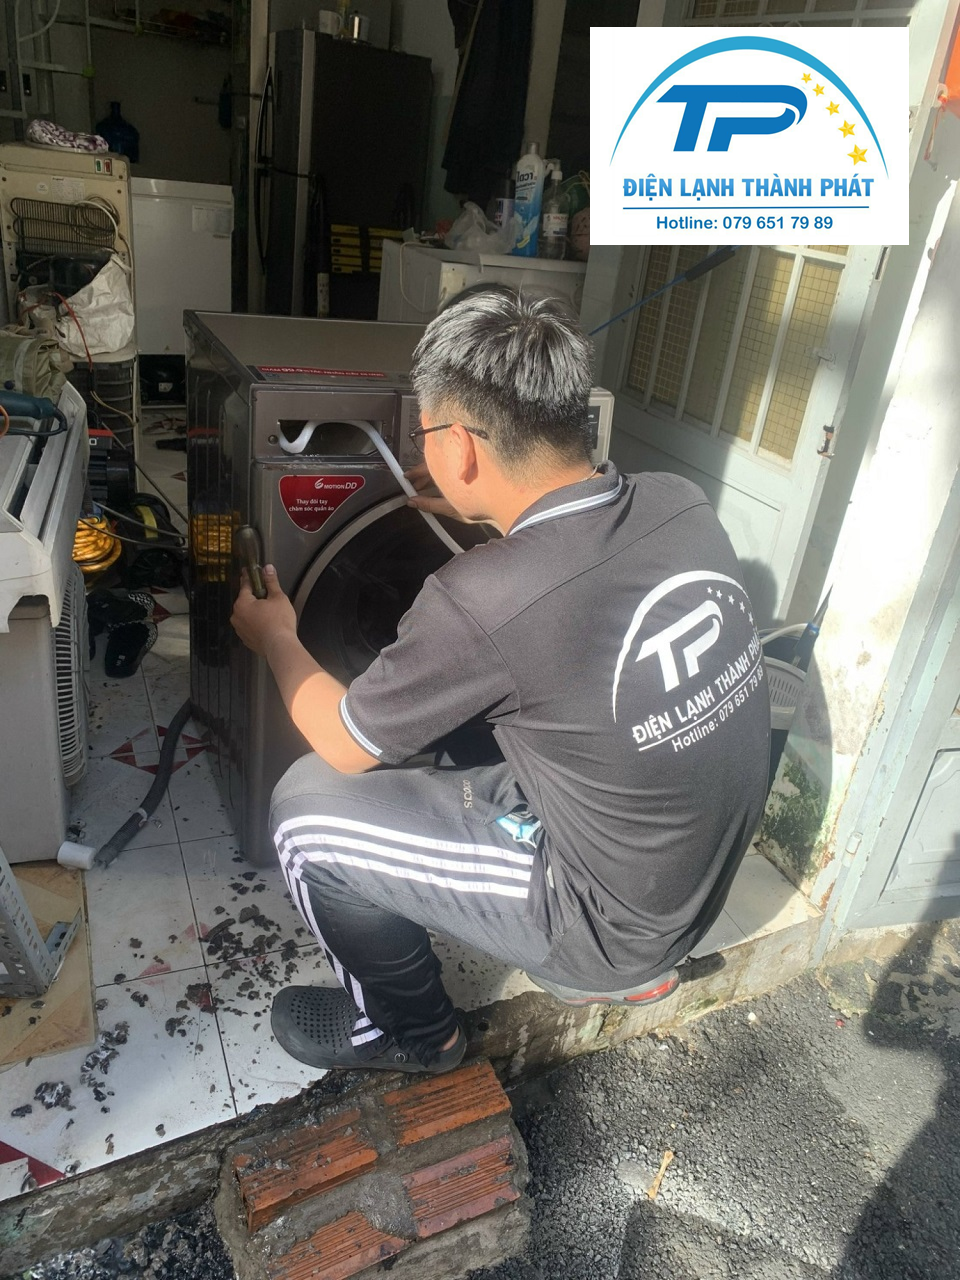 Dịch vụ vệ sinh máy giặt cửa ngang Điện lạnh Thành Phát đảm bảo chất lượng, giá tốt.